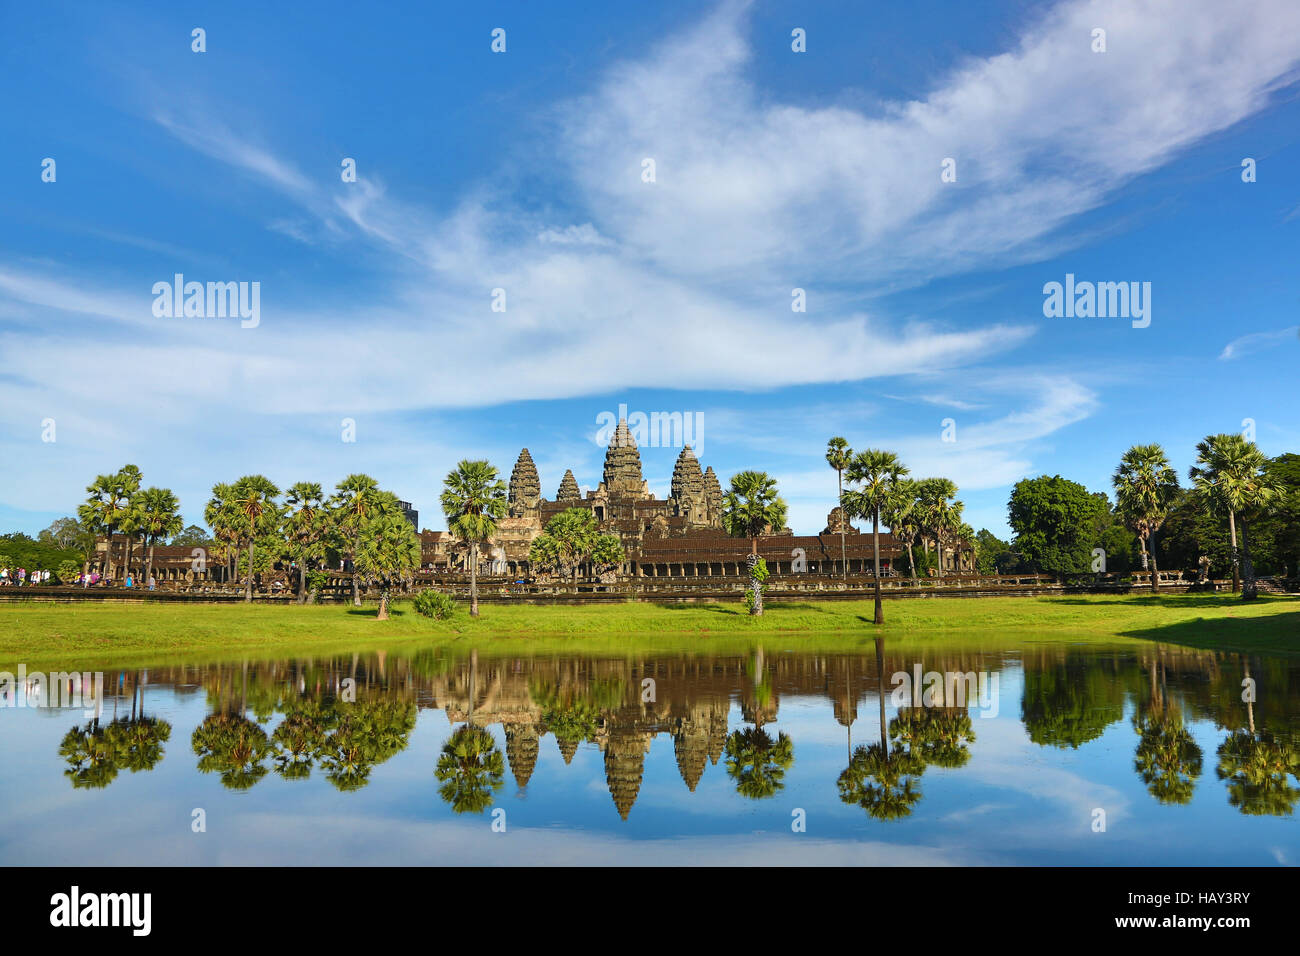 Tempel von Angkor Wat in Siem Reap, Kambodscha Stockfoto